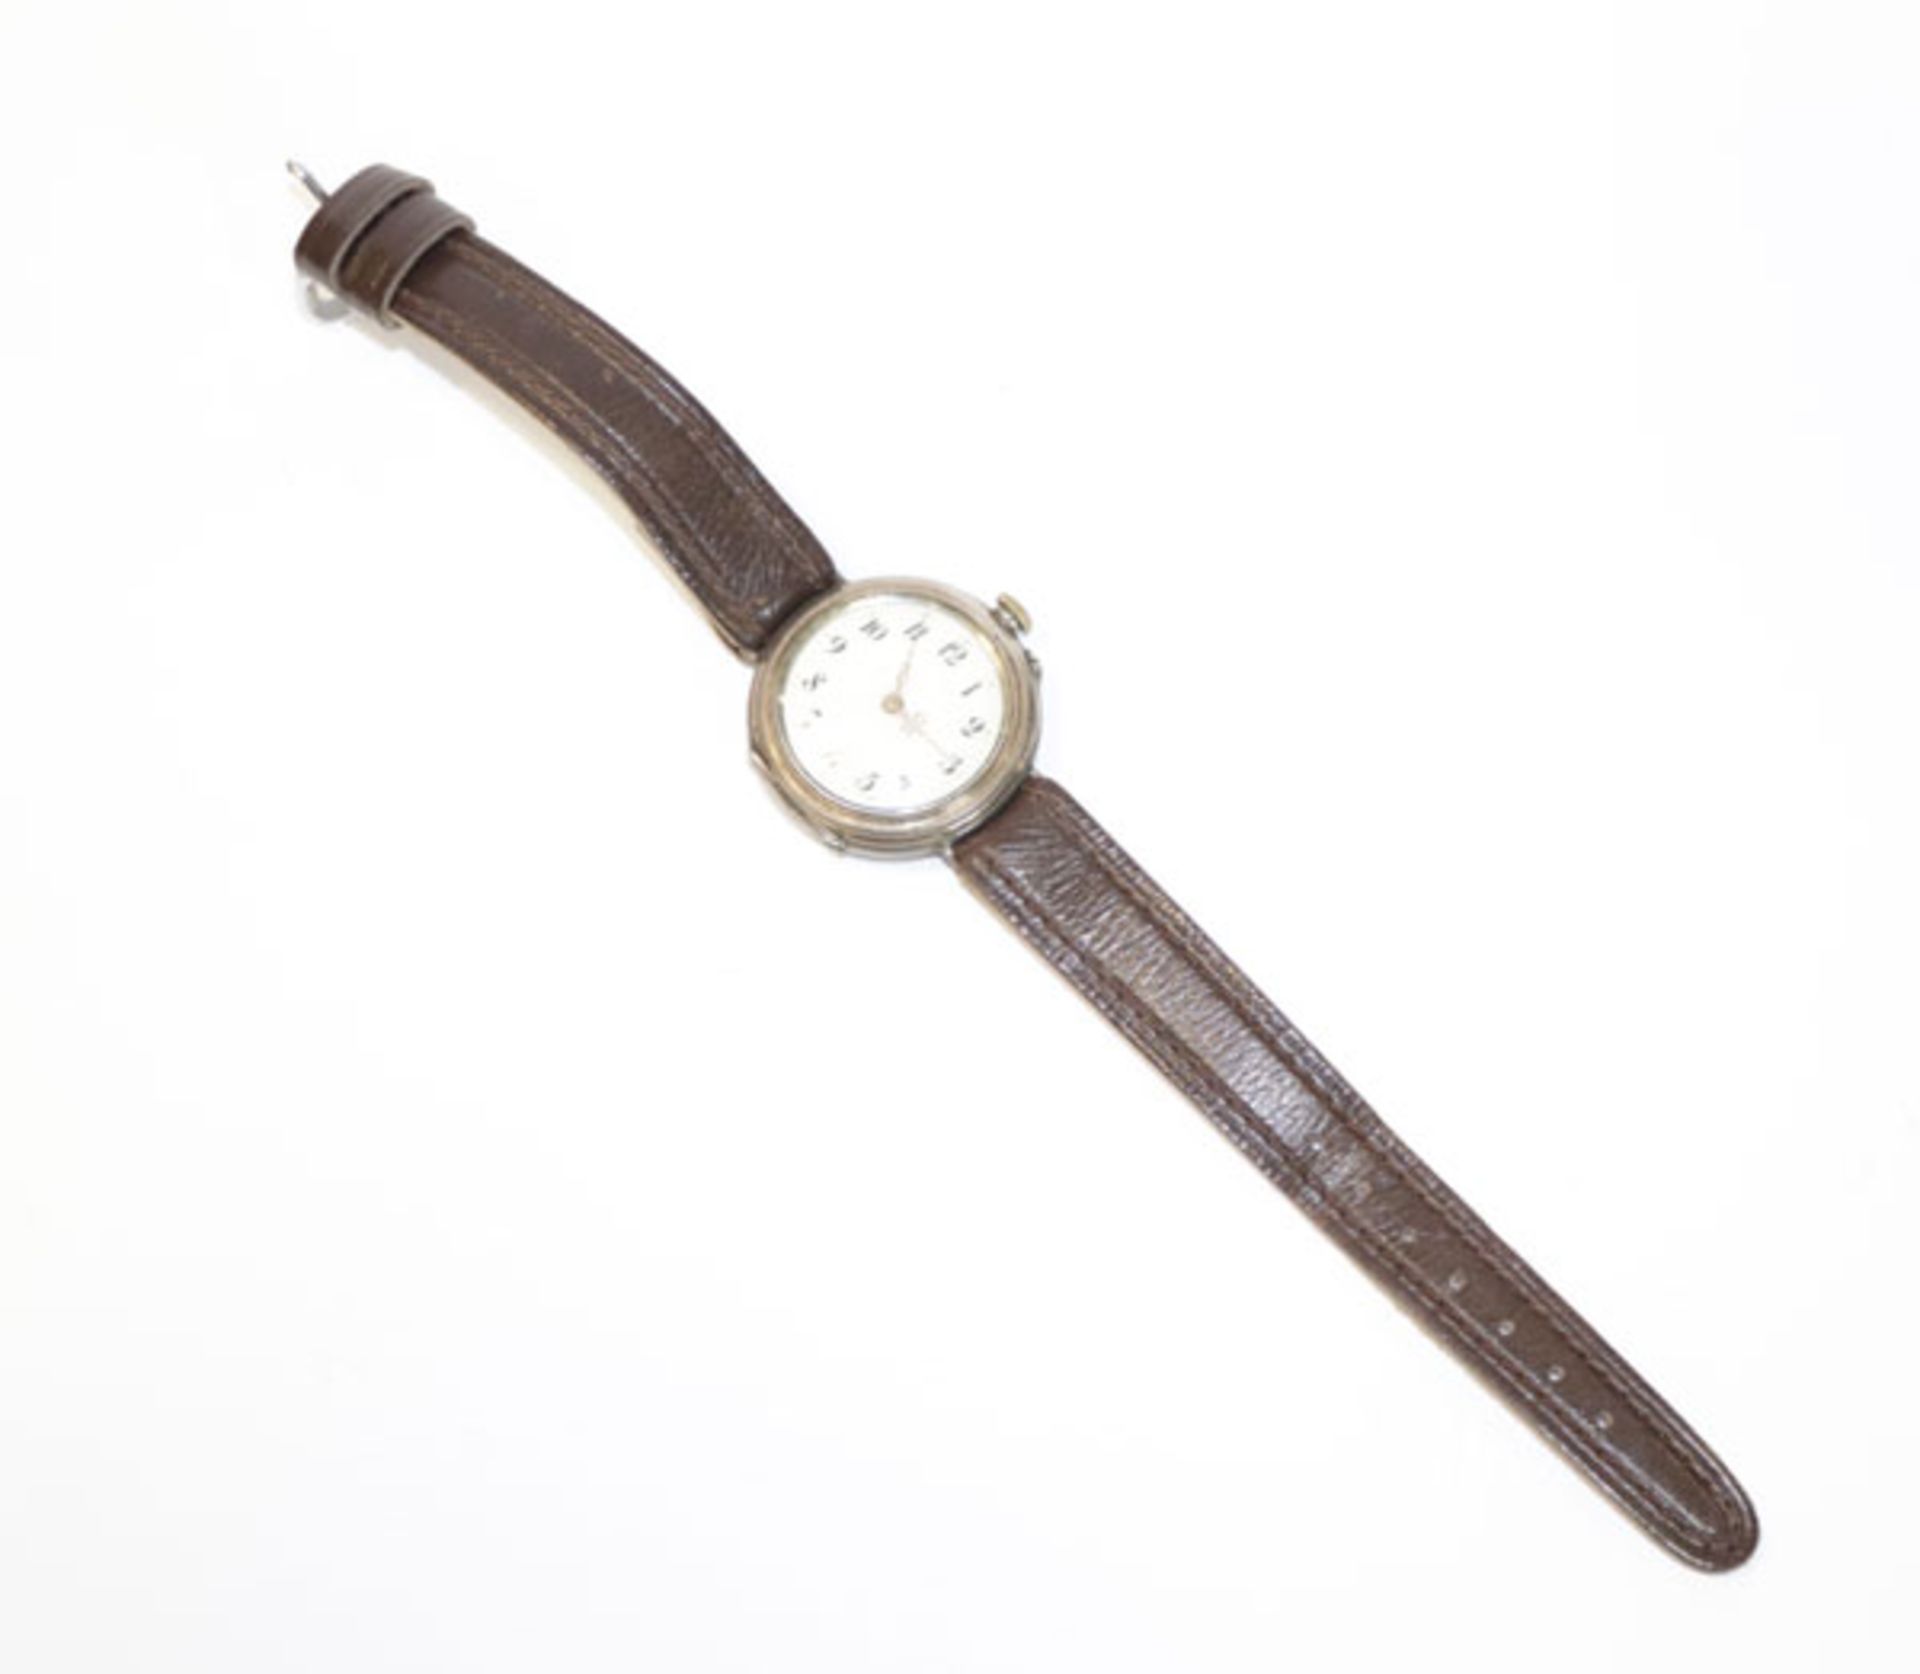 800 Silber Damen-Taschenuhr, umgebaut zur Armbanduhr, intakt